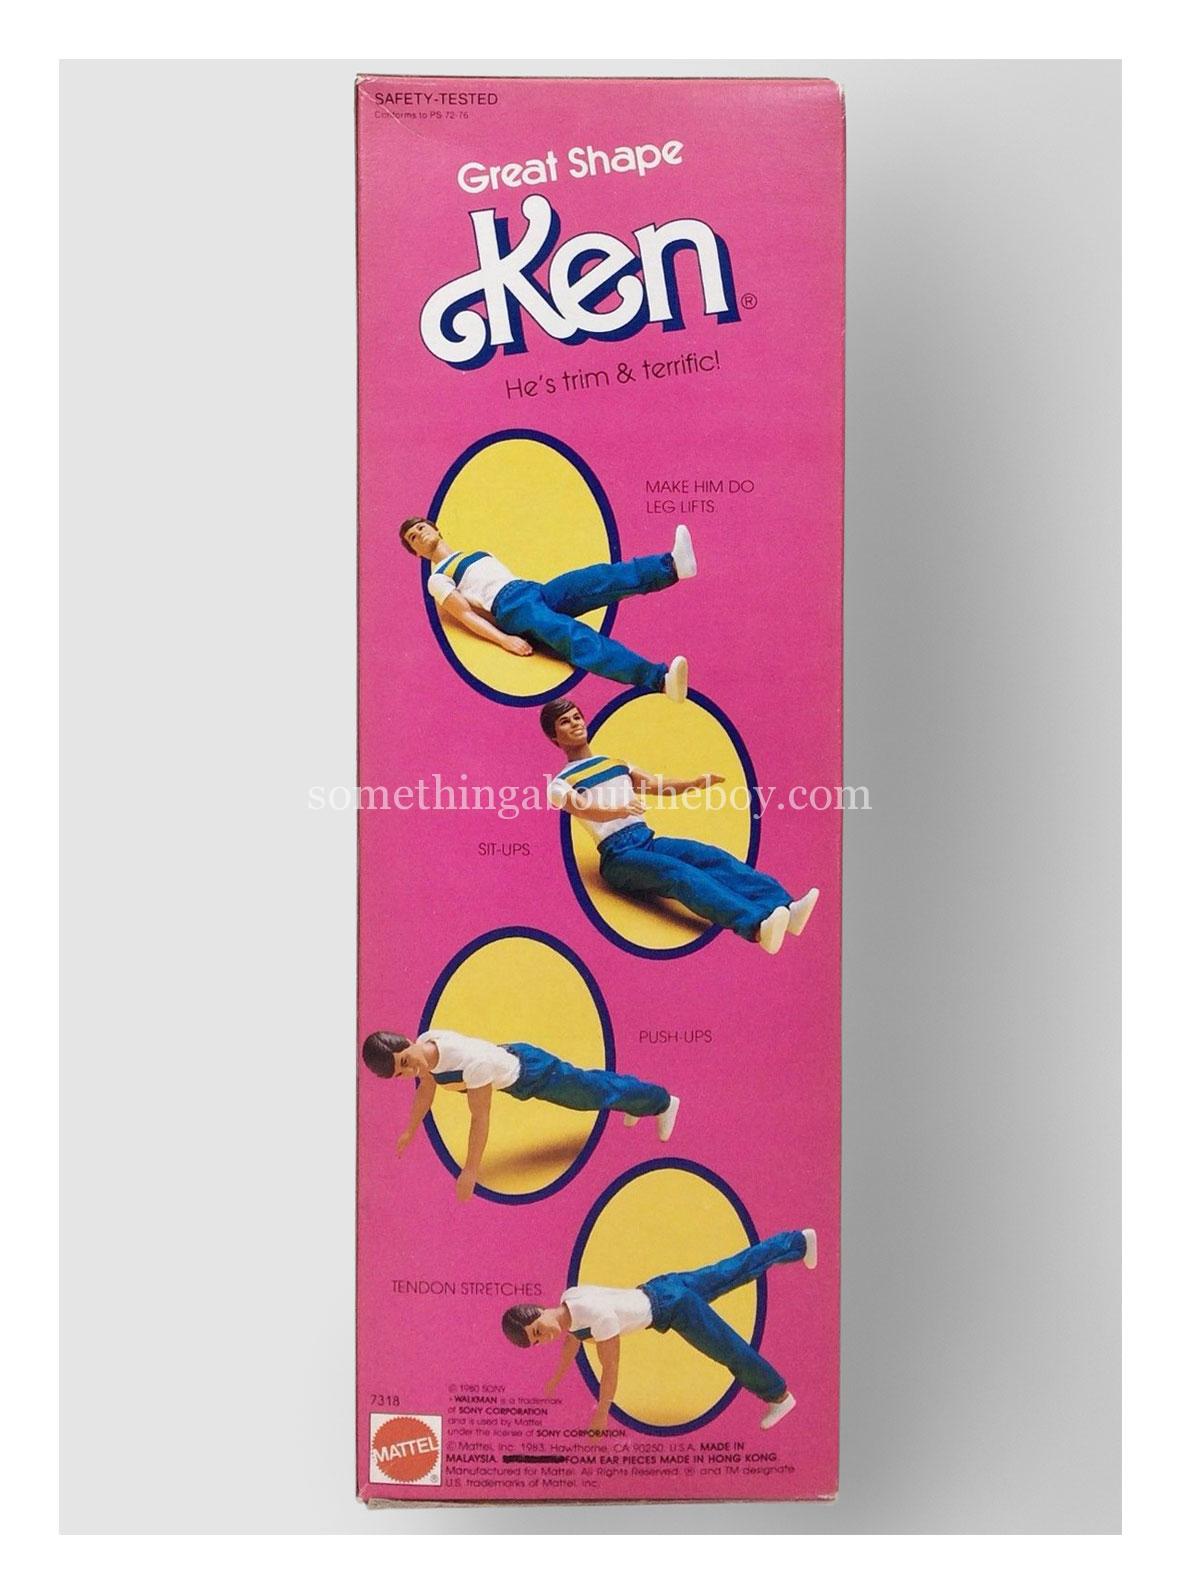 1986 #7318 Great Shape Ken reverse of packaging